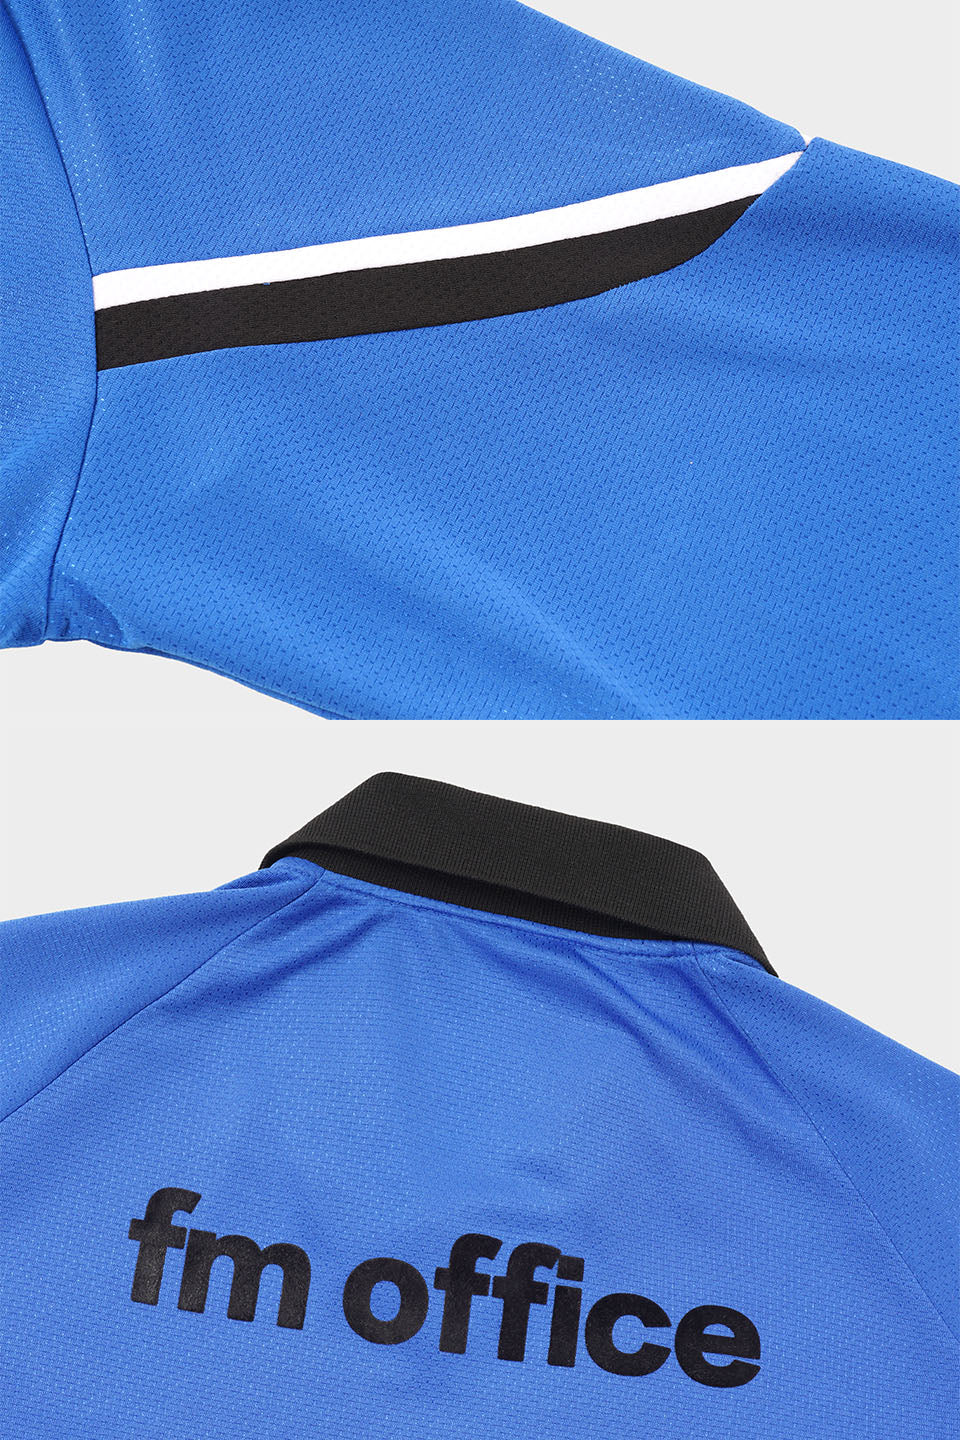 Long -sleeved POLO football uniform